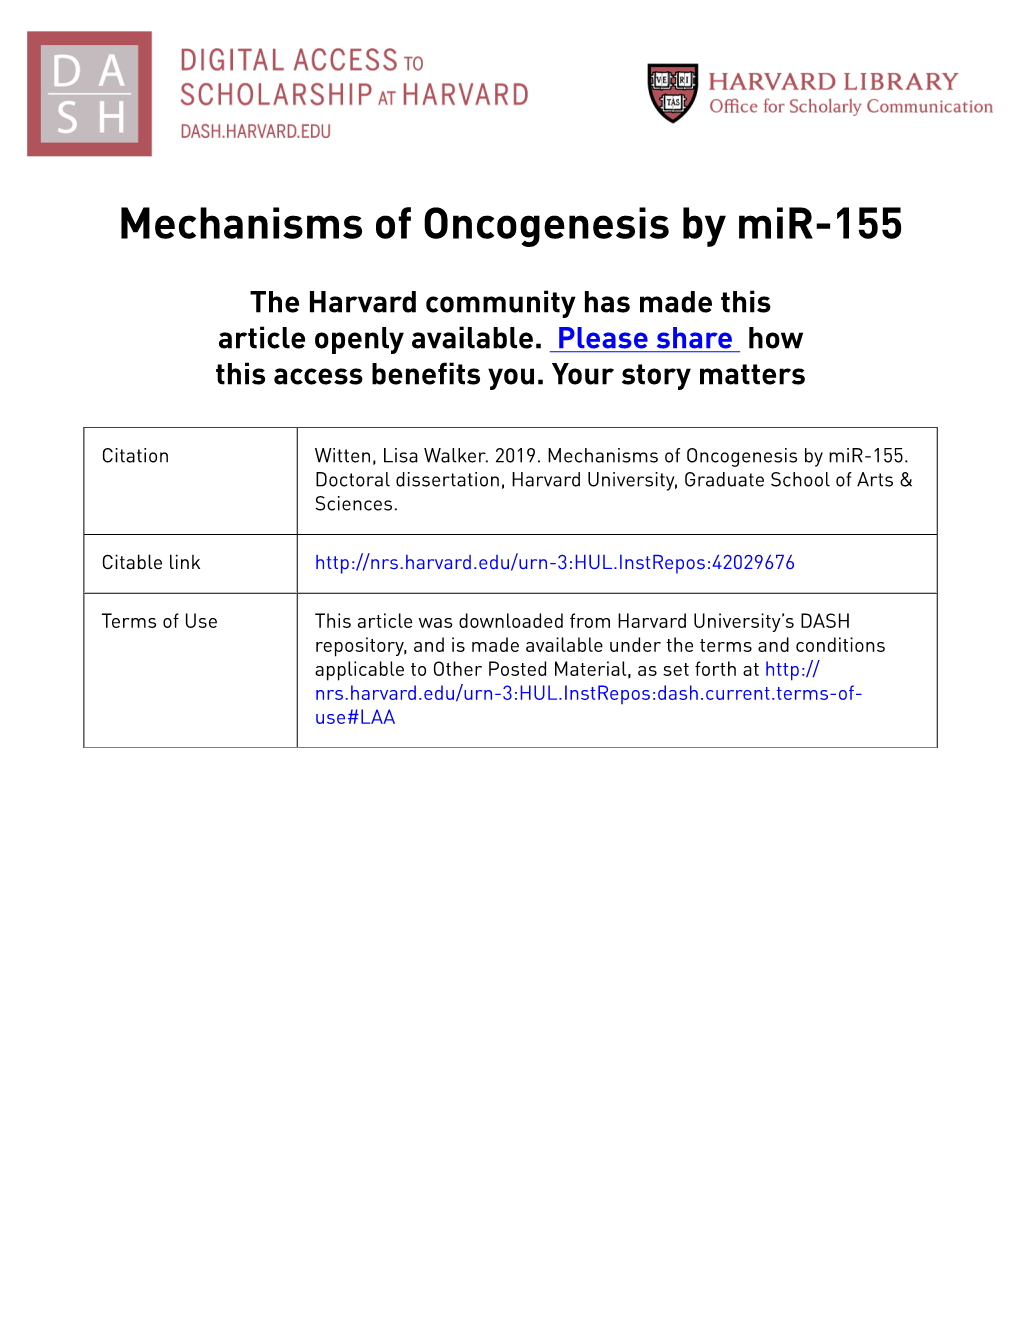 Mechanisms of Oncogenesis by Mir-155